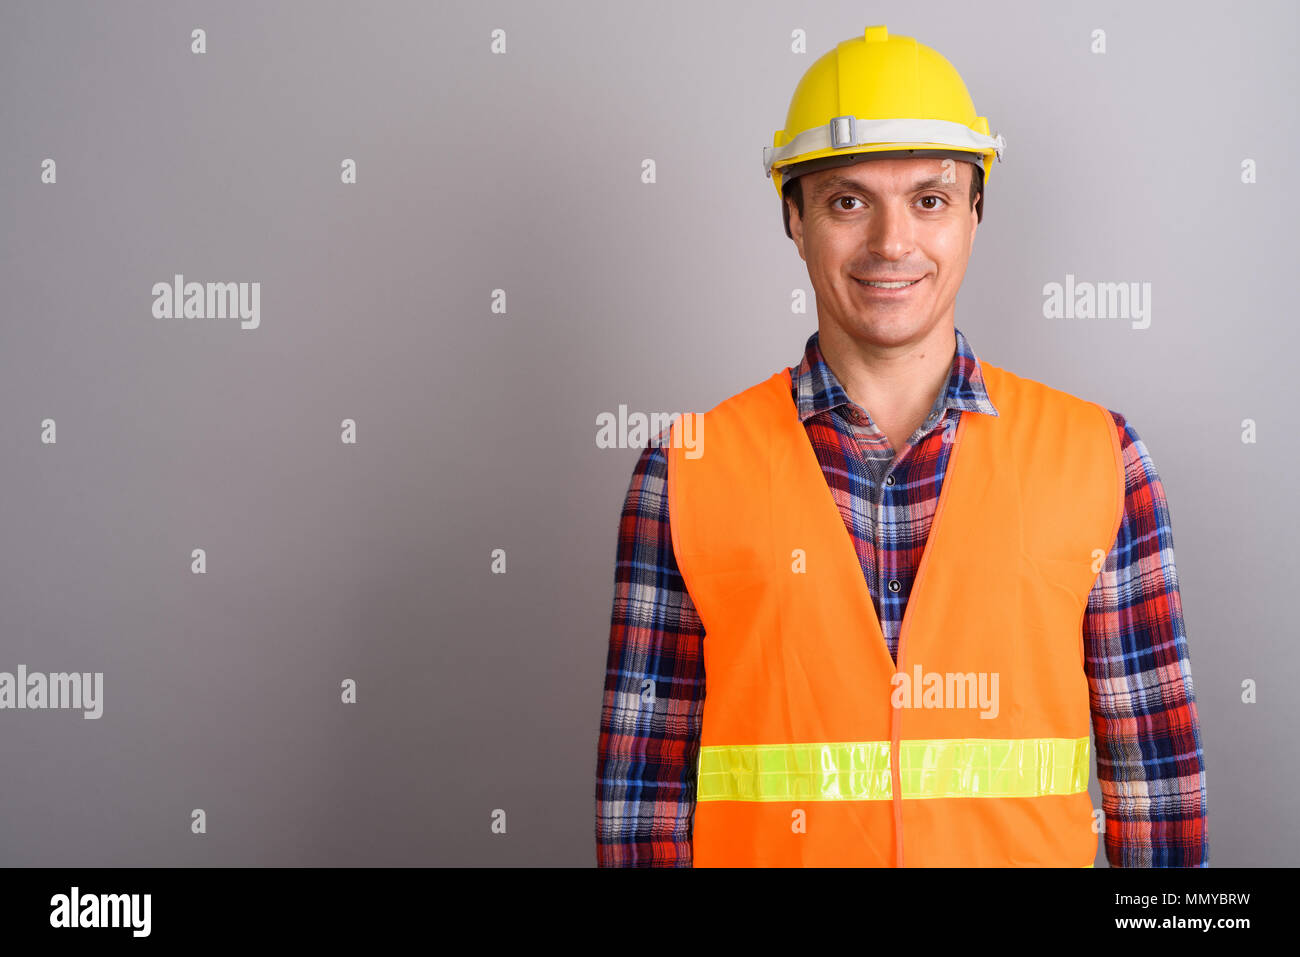 El hombre trabajador de la construcción contra el fondo gris Foto de stock